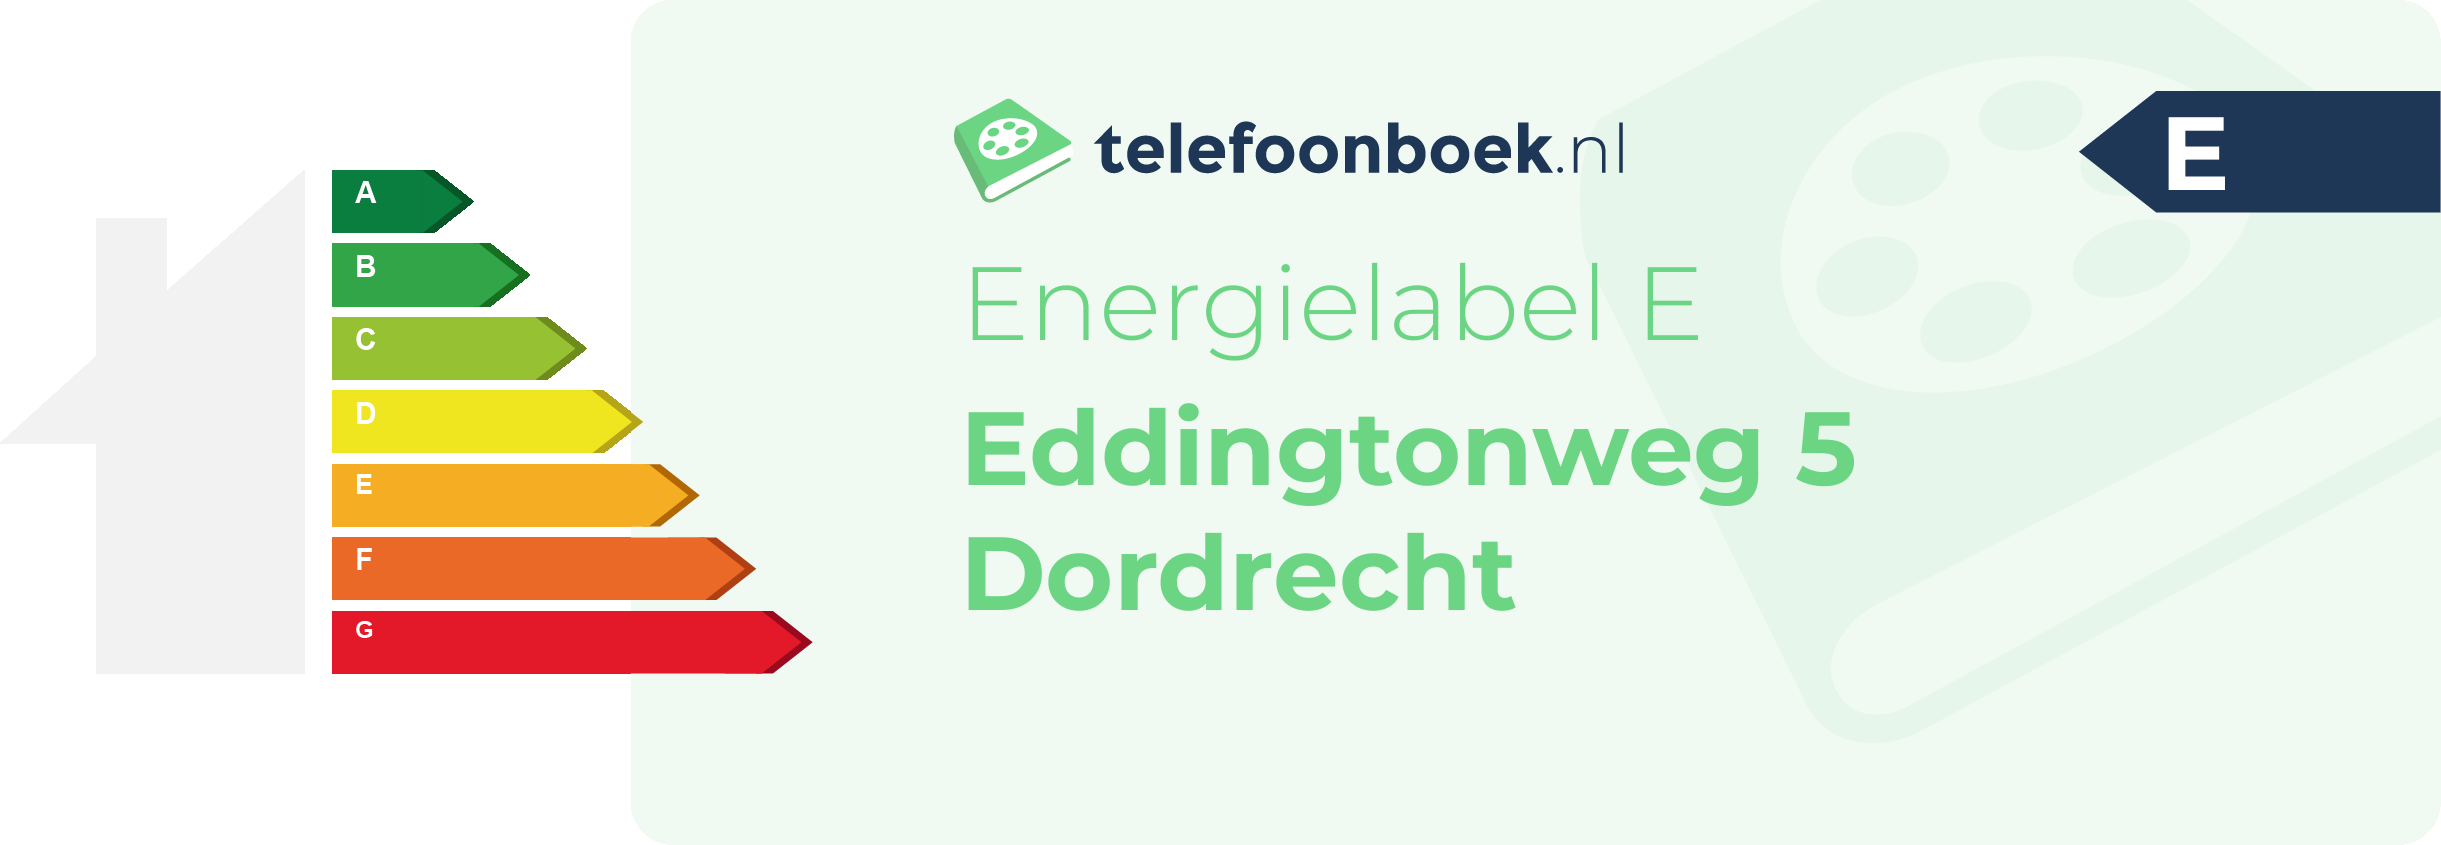 Energielabel Eddingtonweg 5 Dordrecht